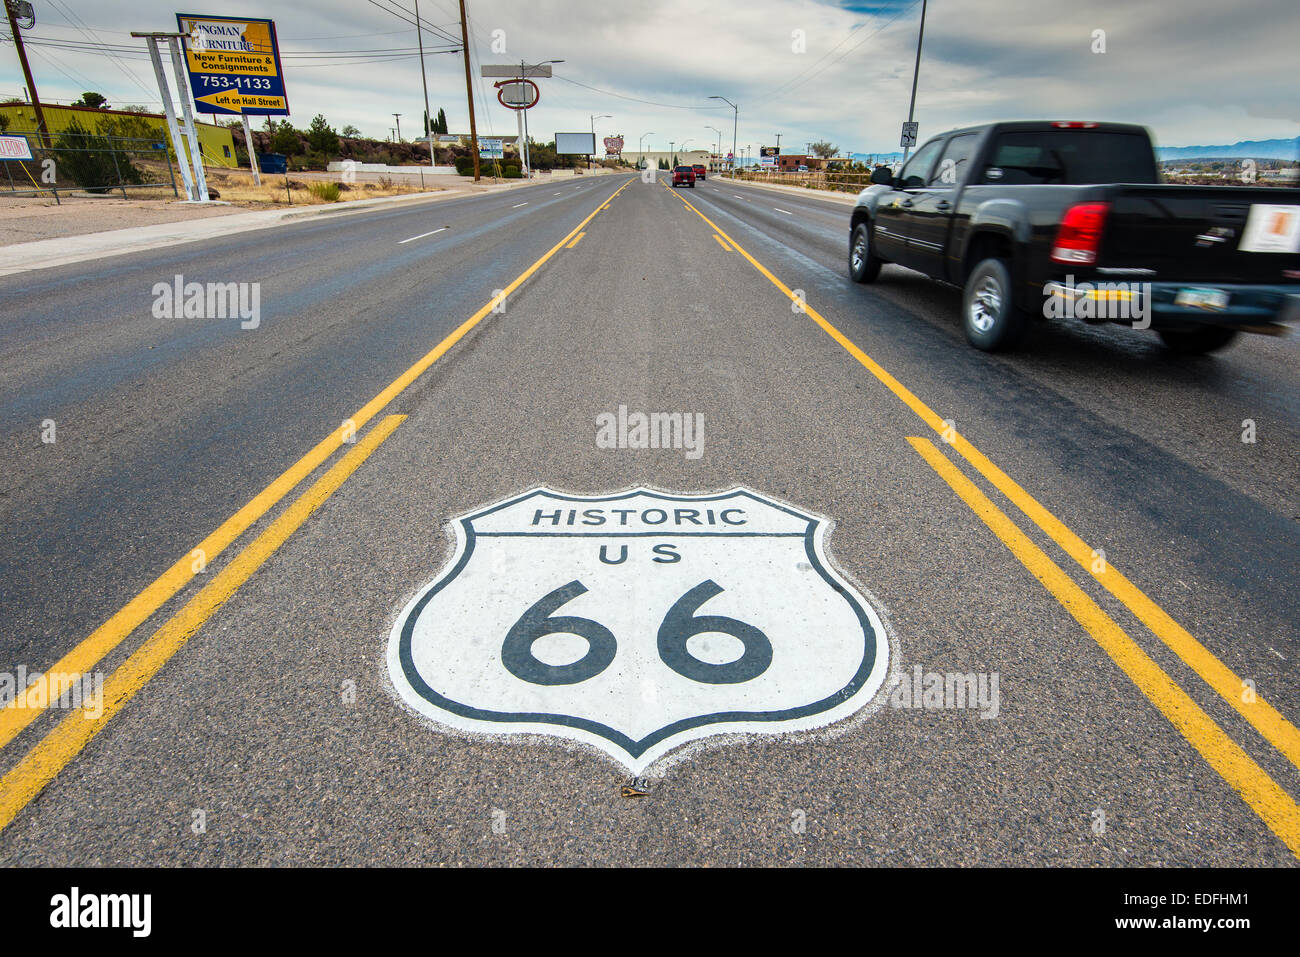 U.S. Route 66 historique panneau routier horizontal, Kingman, Arizona, USA Banque D'Images